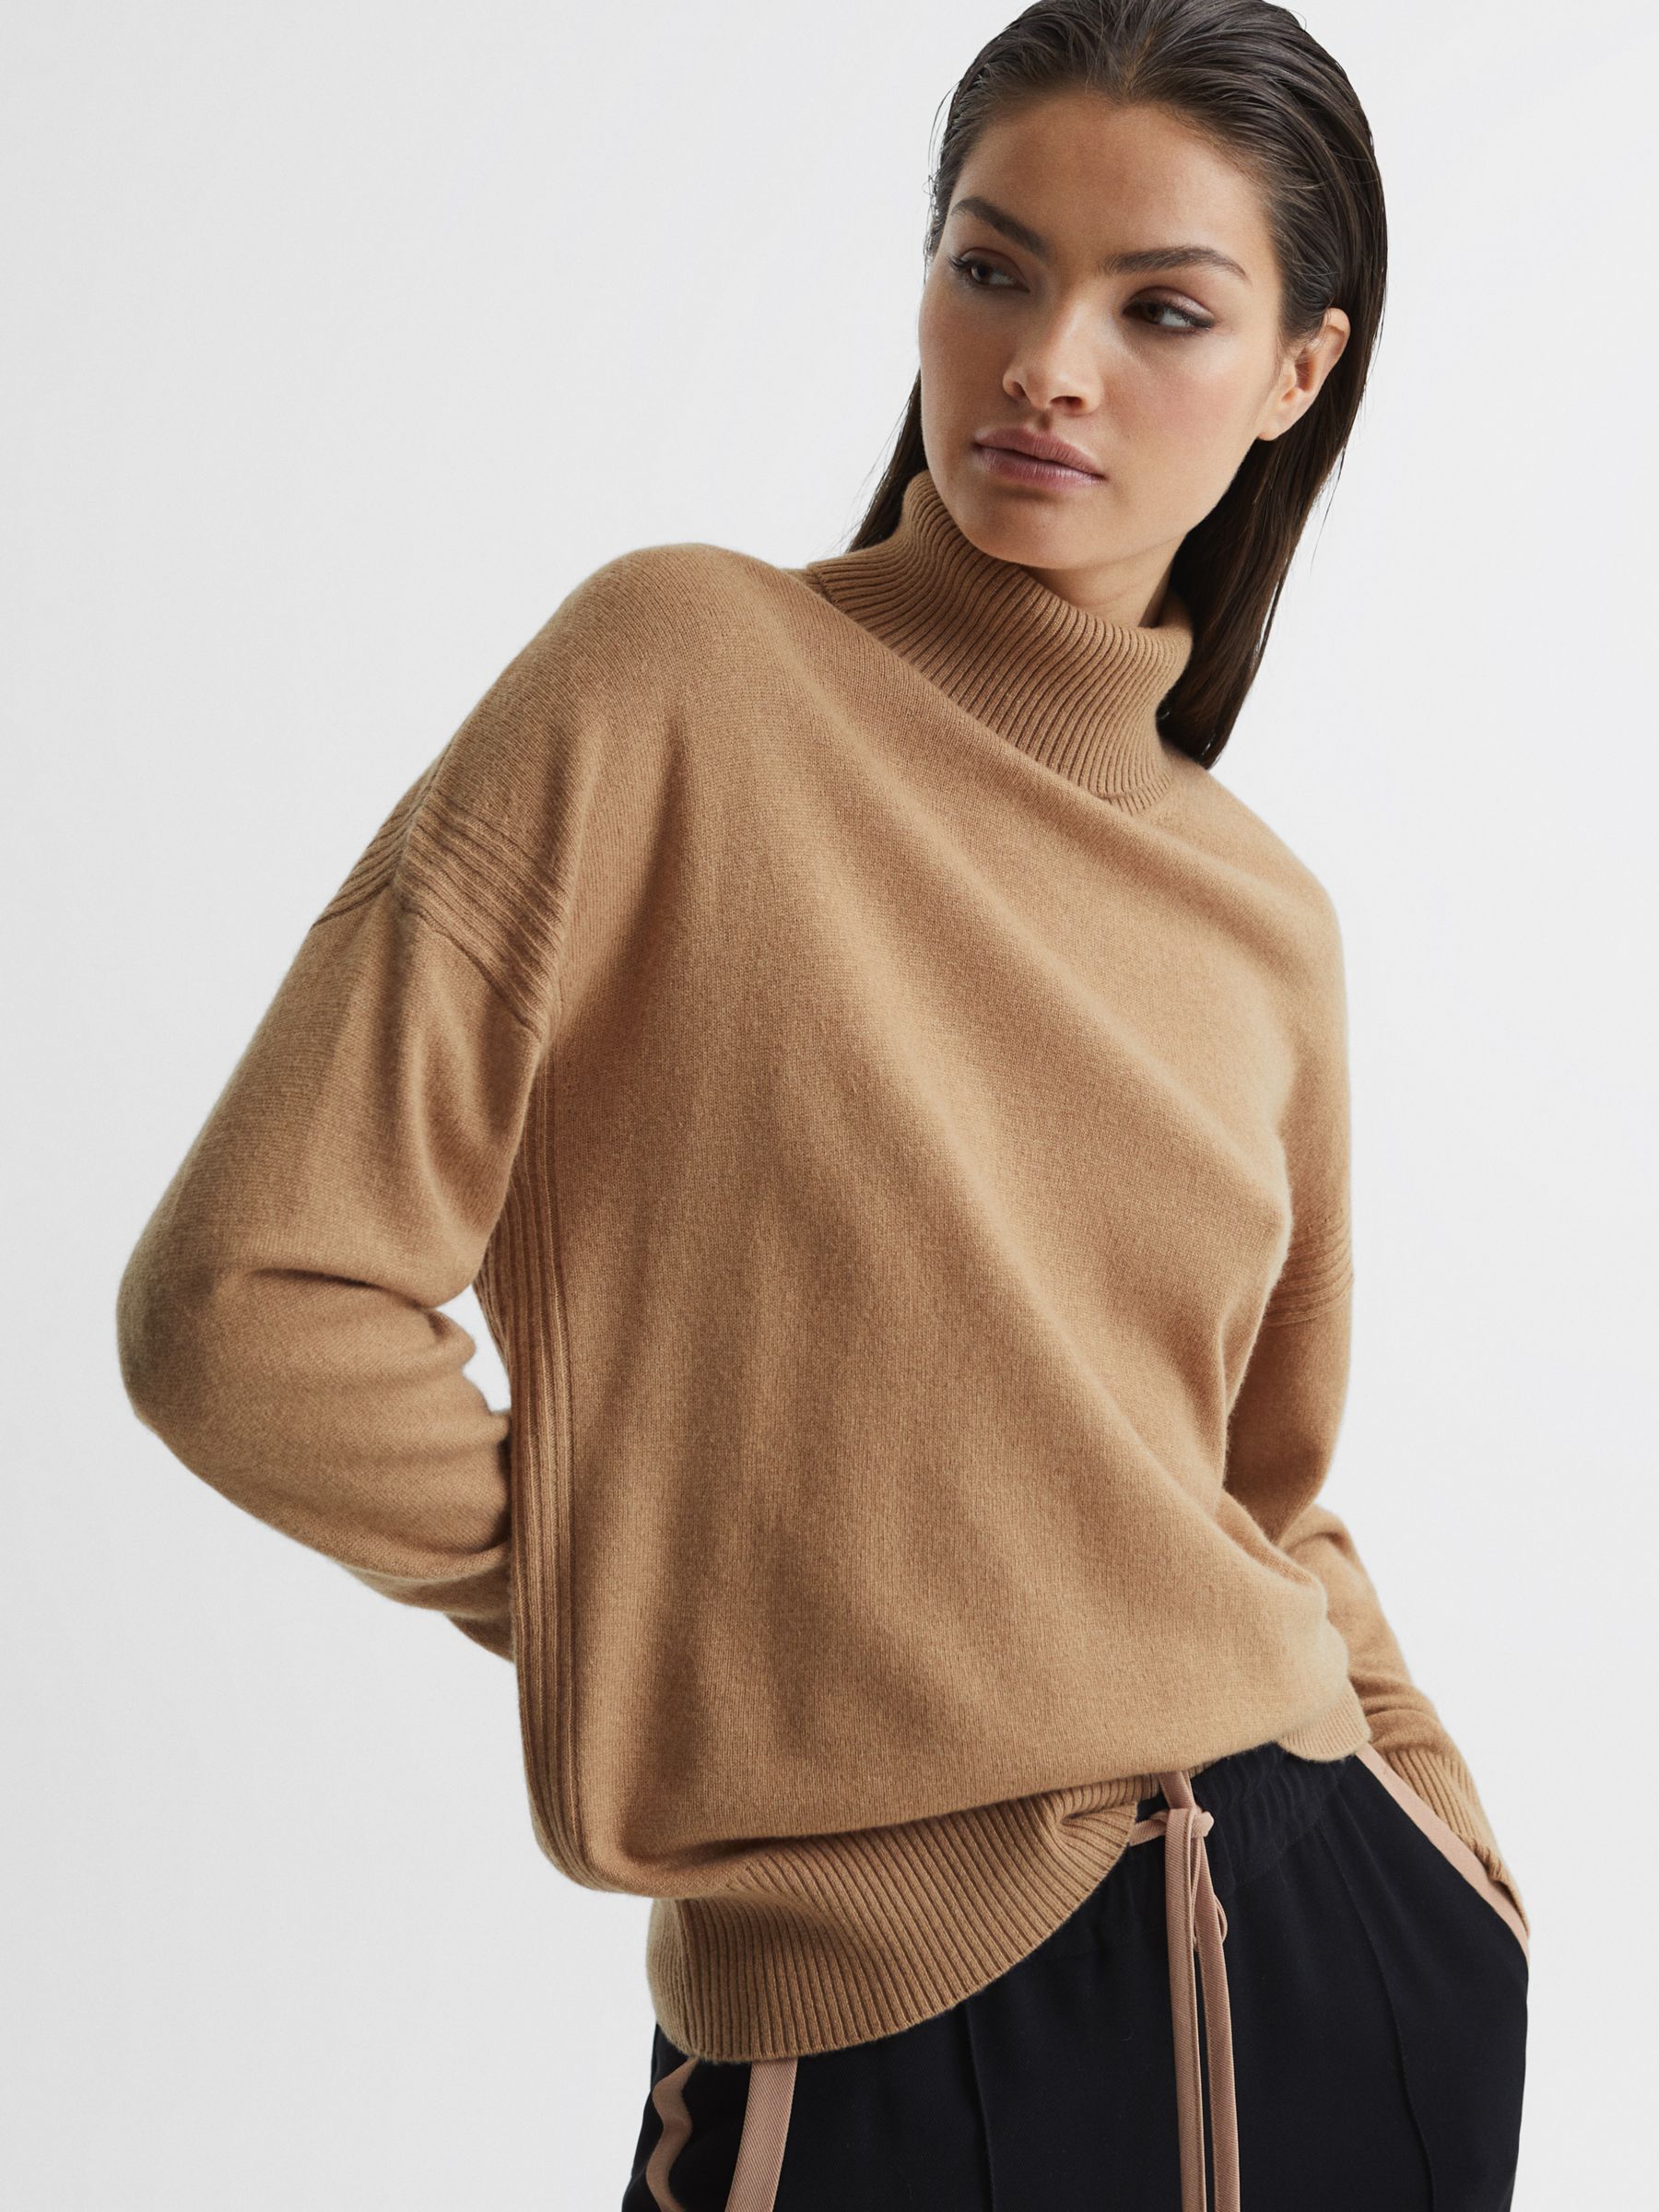 An affordable cashmere v-neck sweater - une femme d'un certain âge